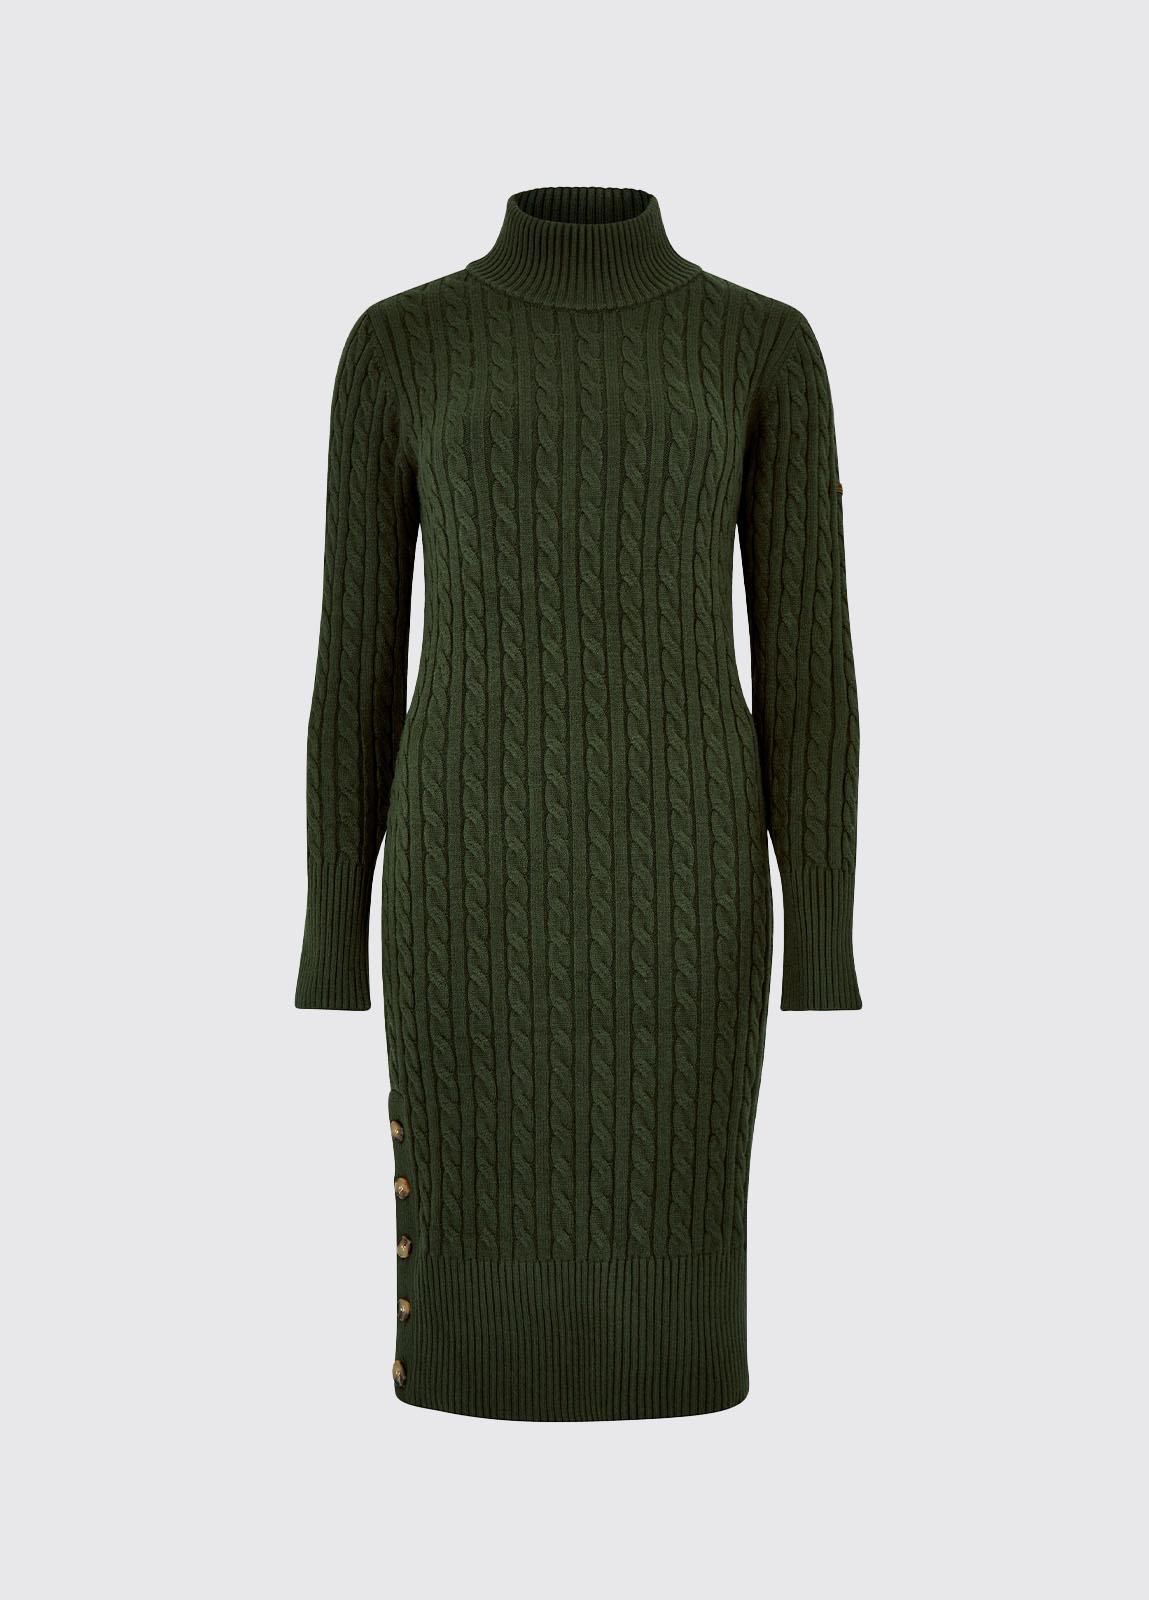 Smithhill Knit Dress - Olive - Size EU 36